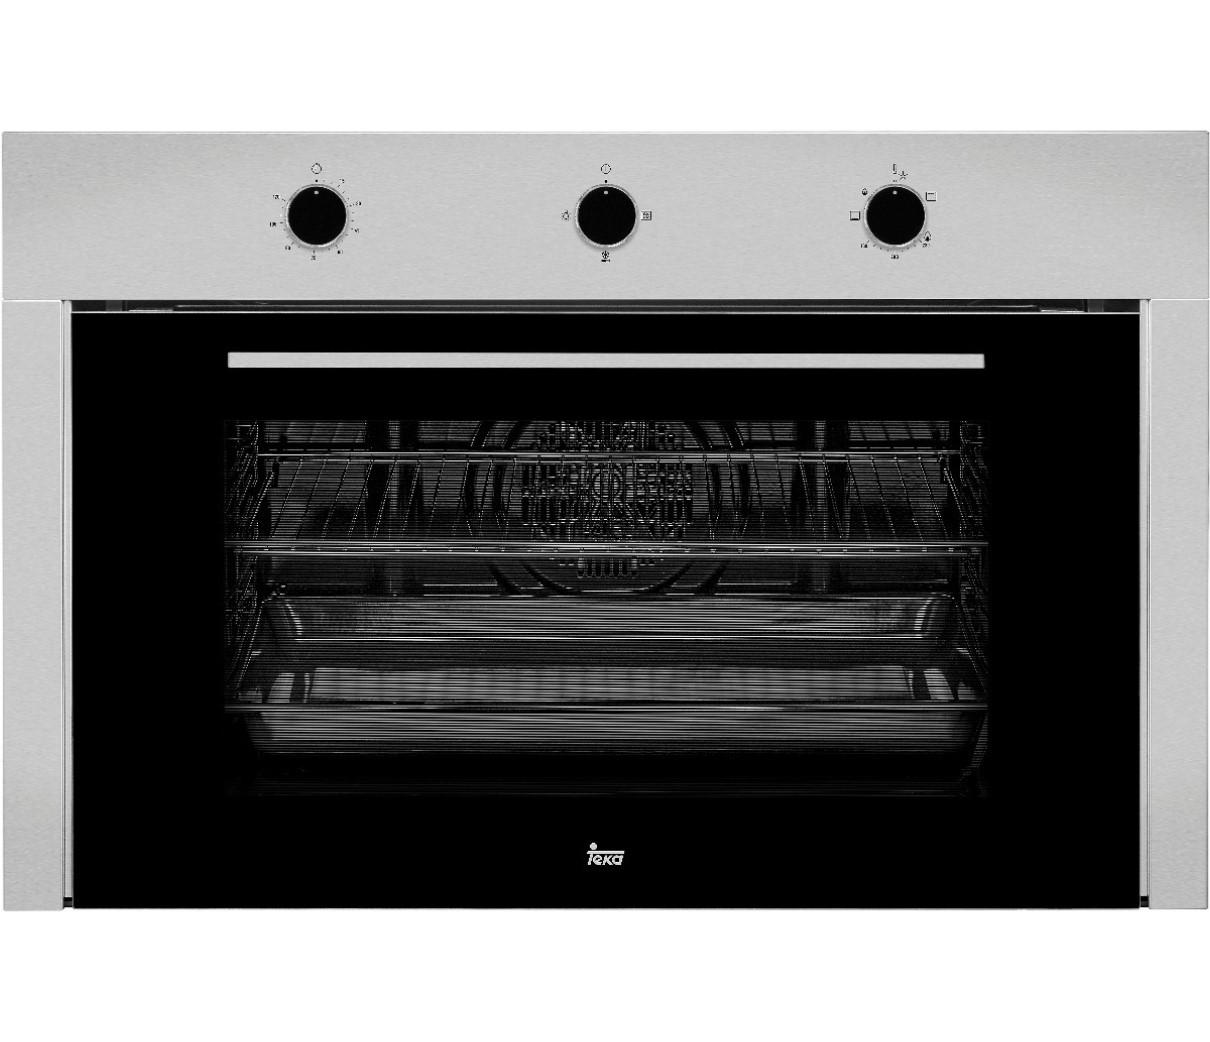 HLF 924 G ⋆ Horno de Gas Teka Multifunción 90 cm cristal negro cocina